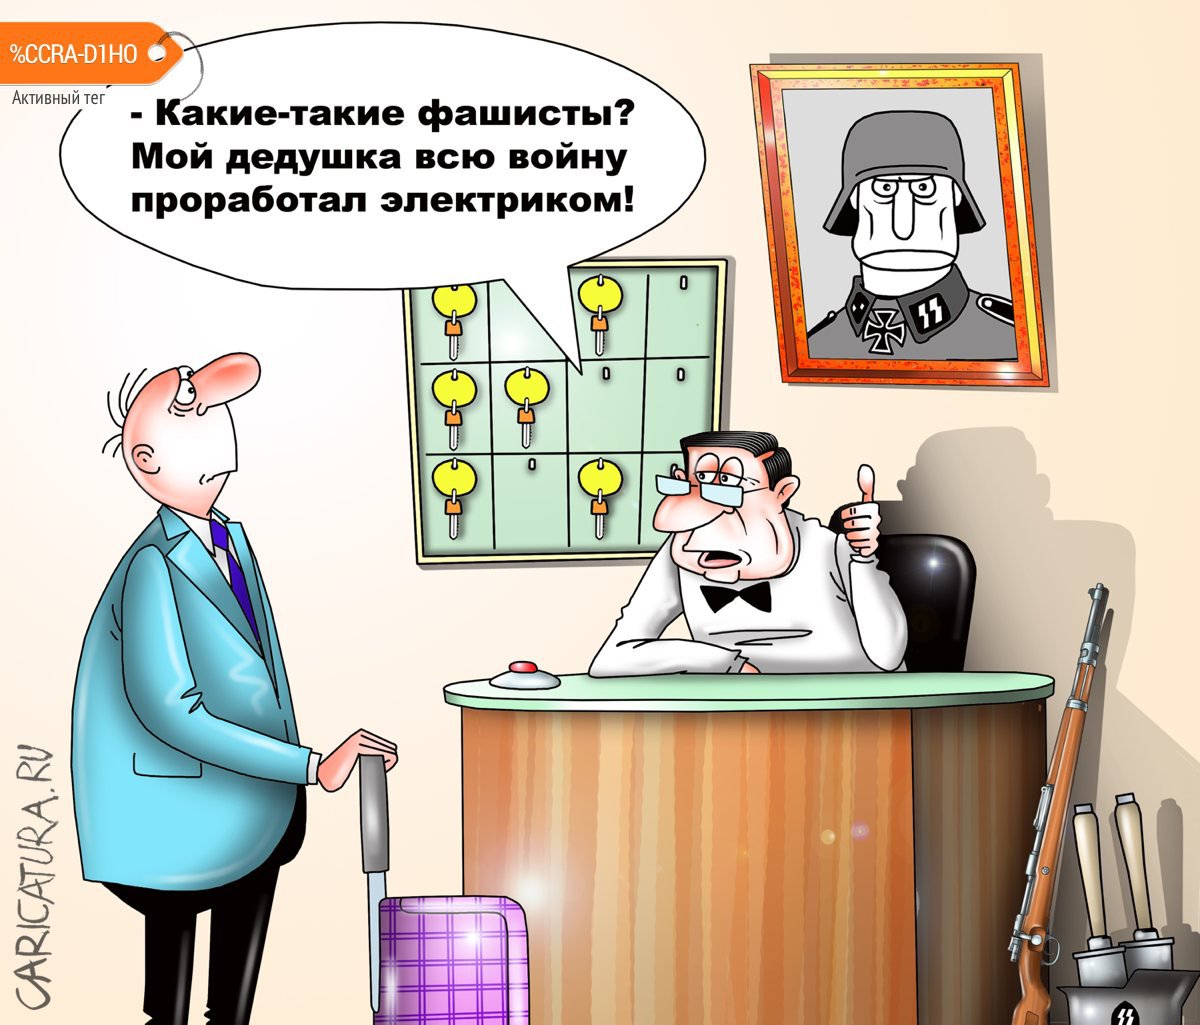 Карикатура "Нацист? Нет, не слышали", Сергей Корсун